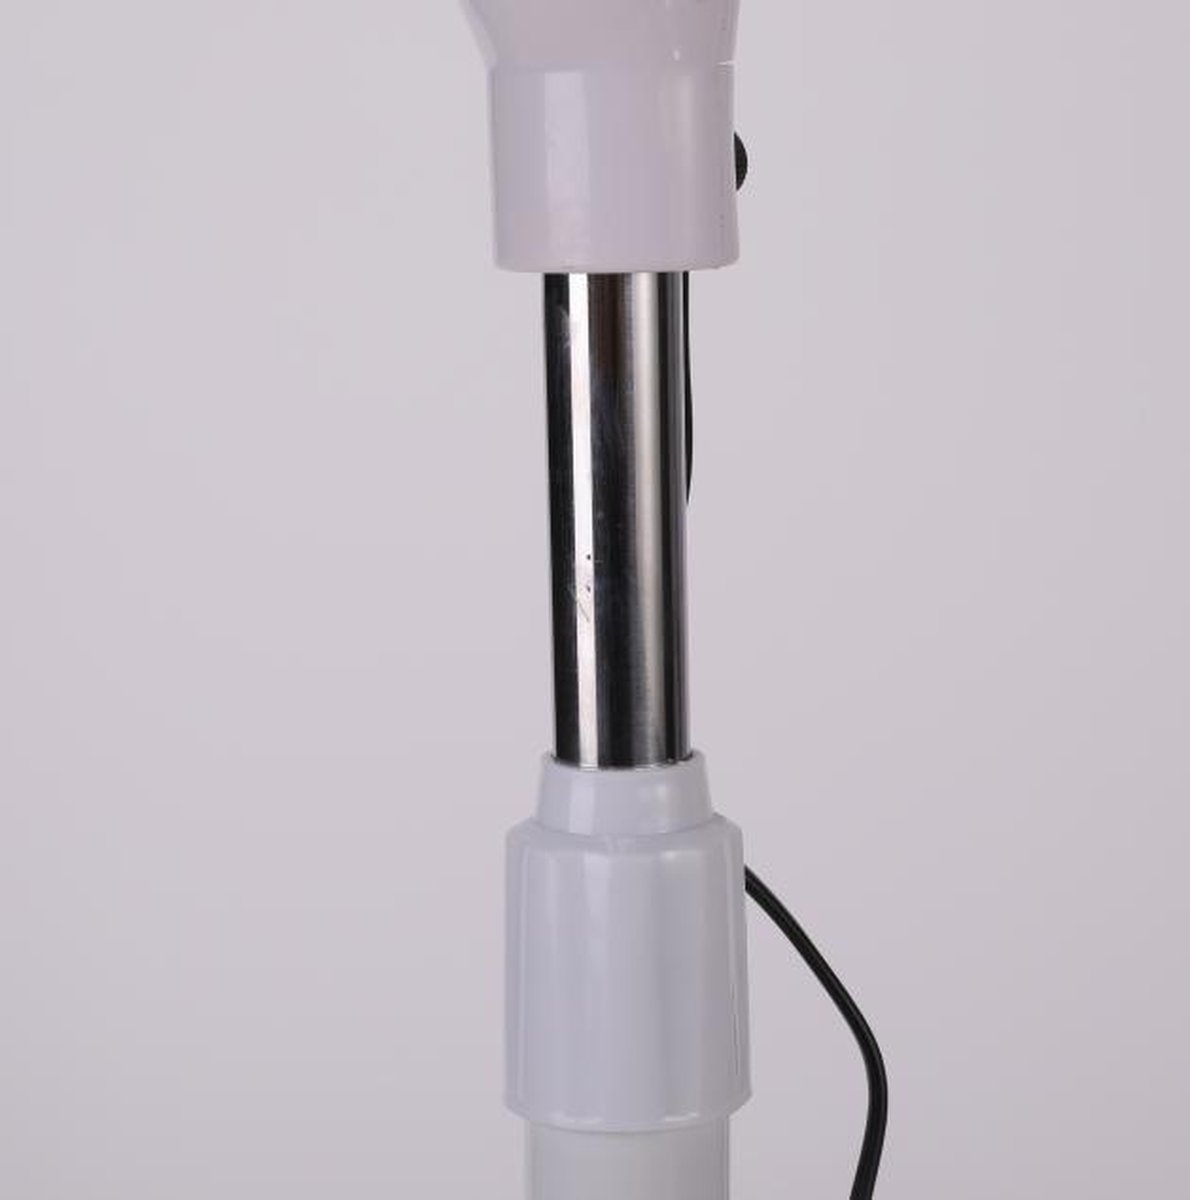 Lampe Infrarouge Chauffante pour Thermothérapie, 275W 220V Lampe à